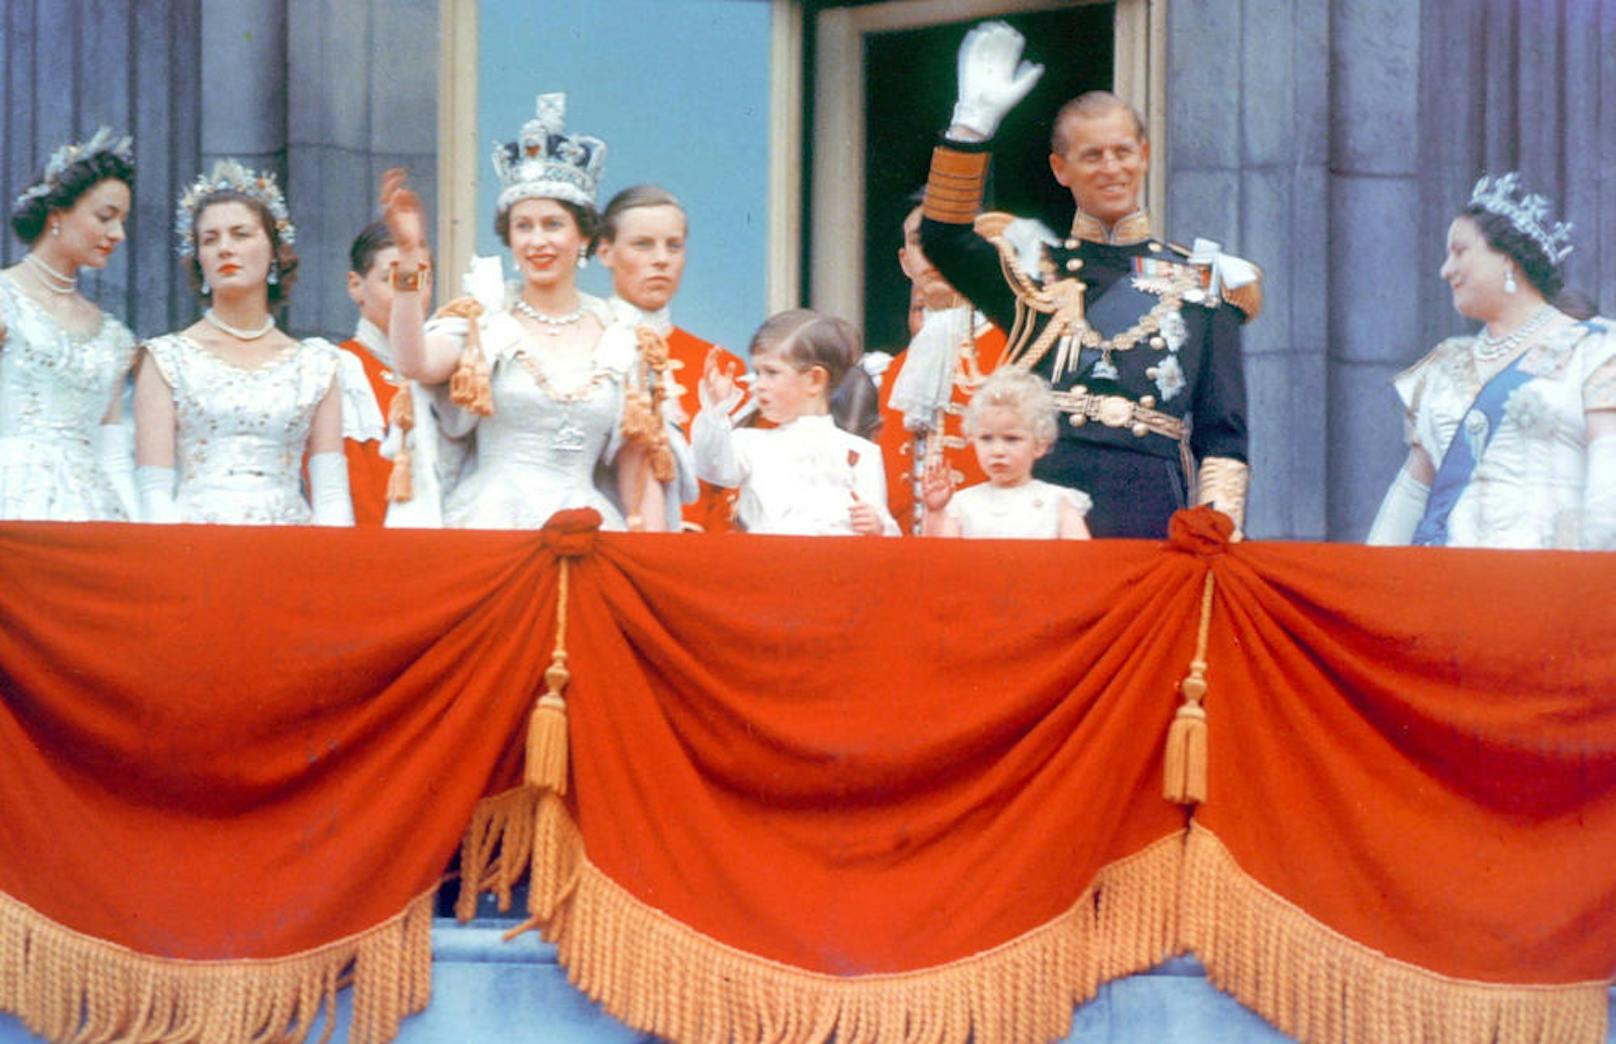 Bei einem Besuch in Kanada 1969 hielt sich der Prinz kurz: "Ich eröffne hiermit feierlich was auch immer das ist." Foto: 
1953 - Queen Elizabeth II mit der royalen Familie am Balkon des Buckingham Palace